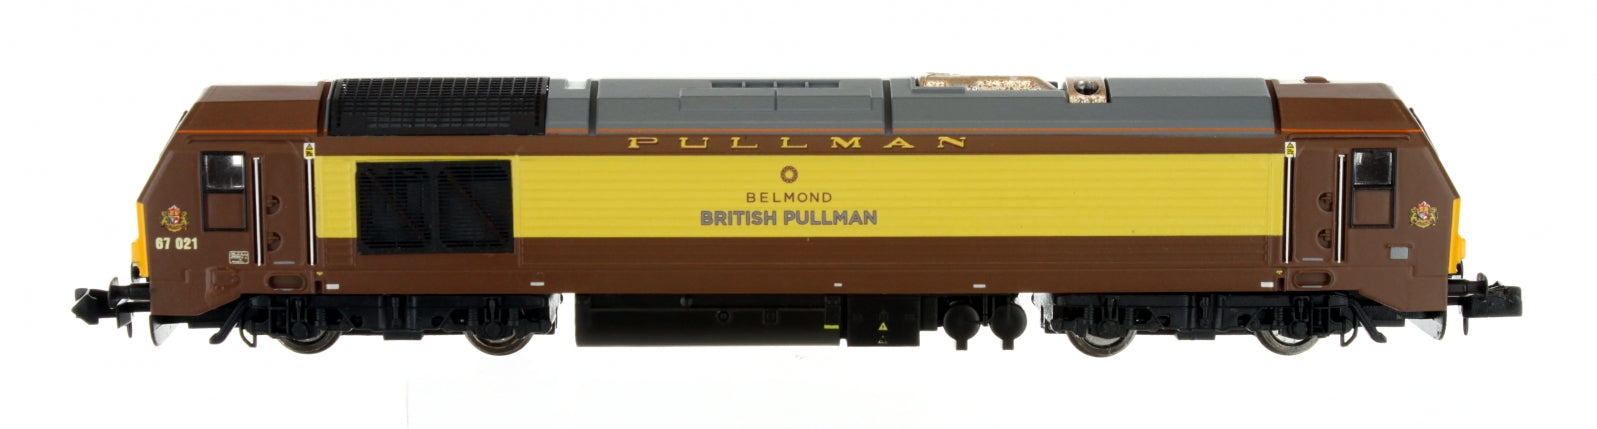 2D-010-010 N Gauge Class 67 Belmond British Pullman 67021